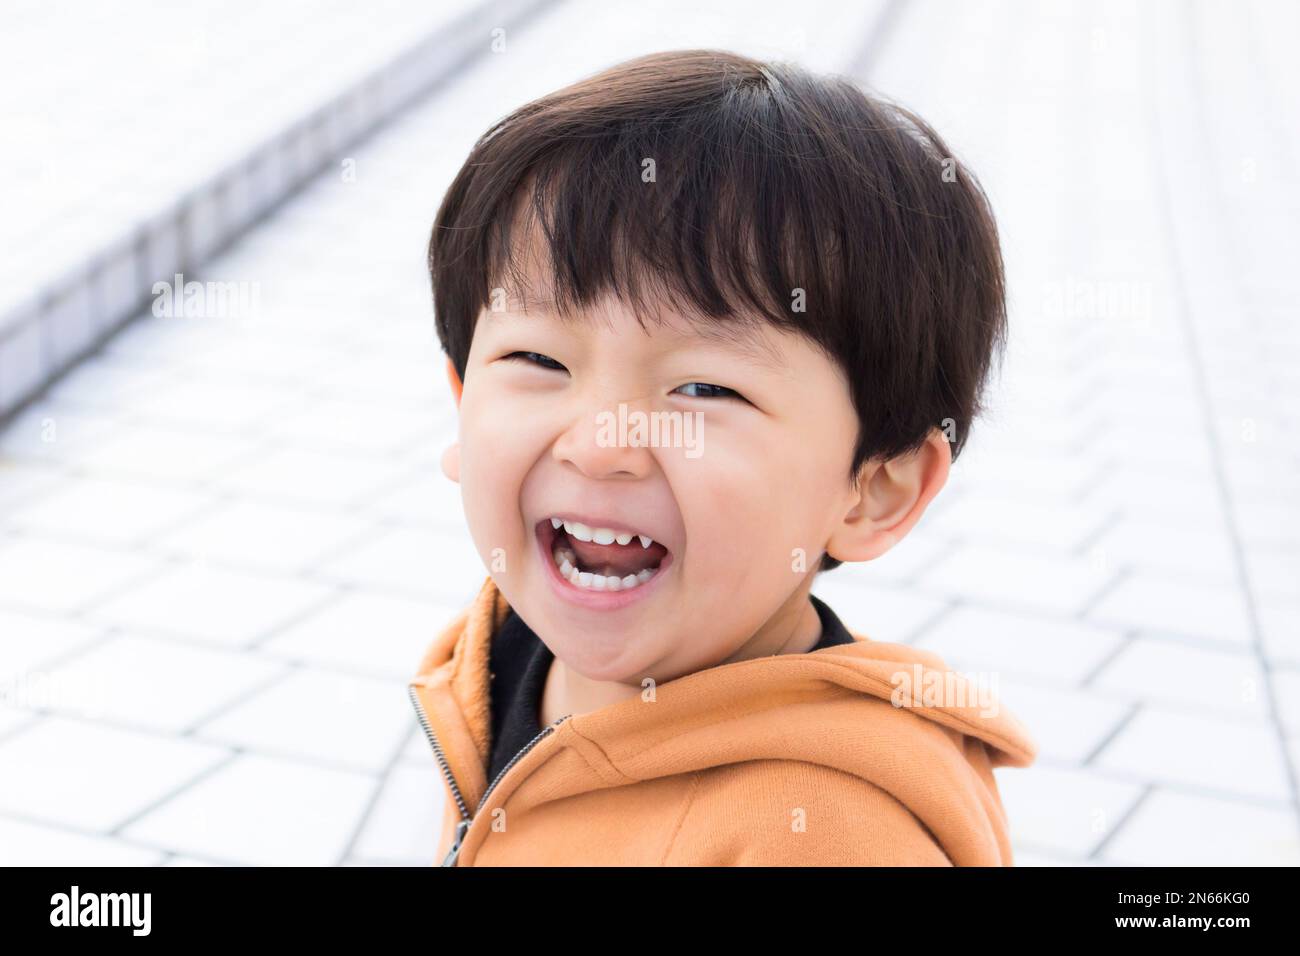 Un garçon sourit au parc d'attractions de Korakuen, 3 ans, Korakuen, Bunkyo Ku, Tokyo, Japon, Asie de l'est, Asie Banque D'Images